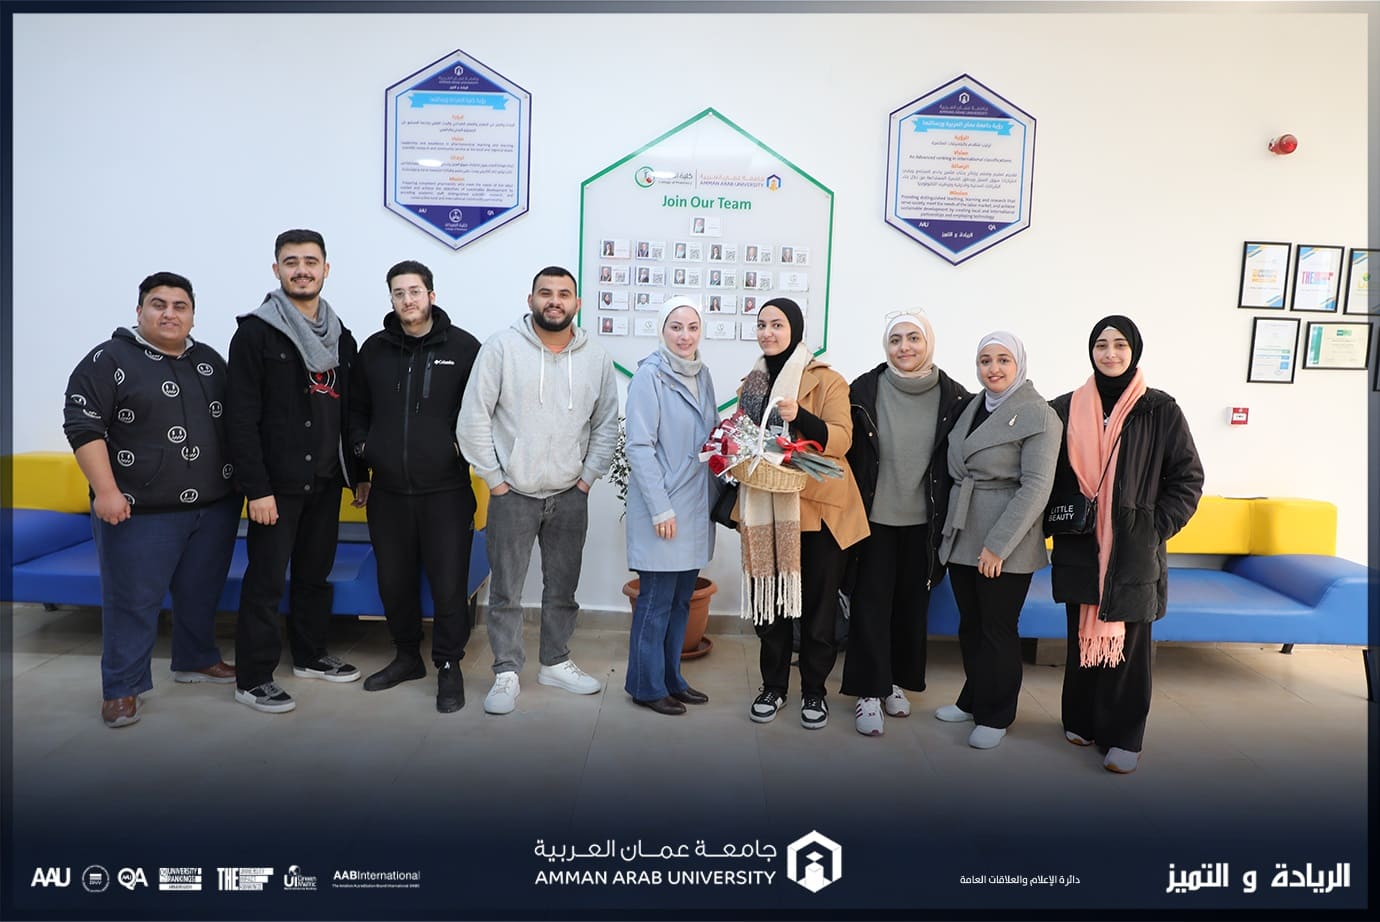 بمناسبة عيد الأم كلية الصيدلة في جامعة عمان العربية تطلق مبادرة "أنتِ العطاء"